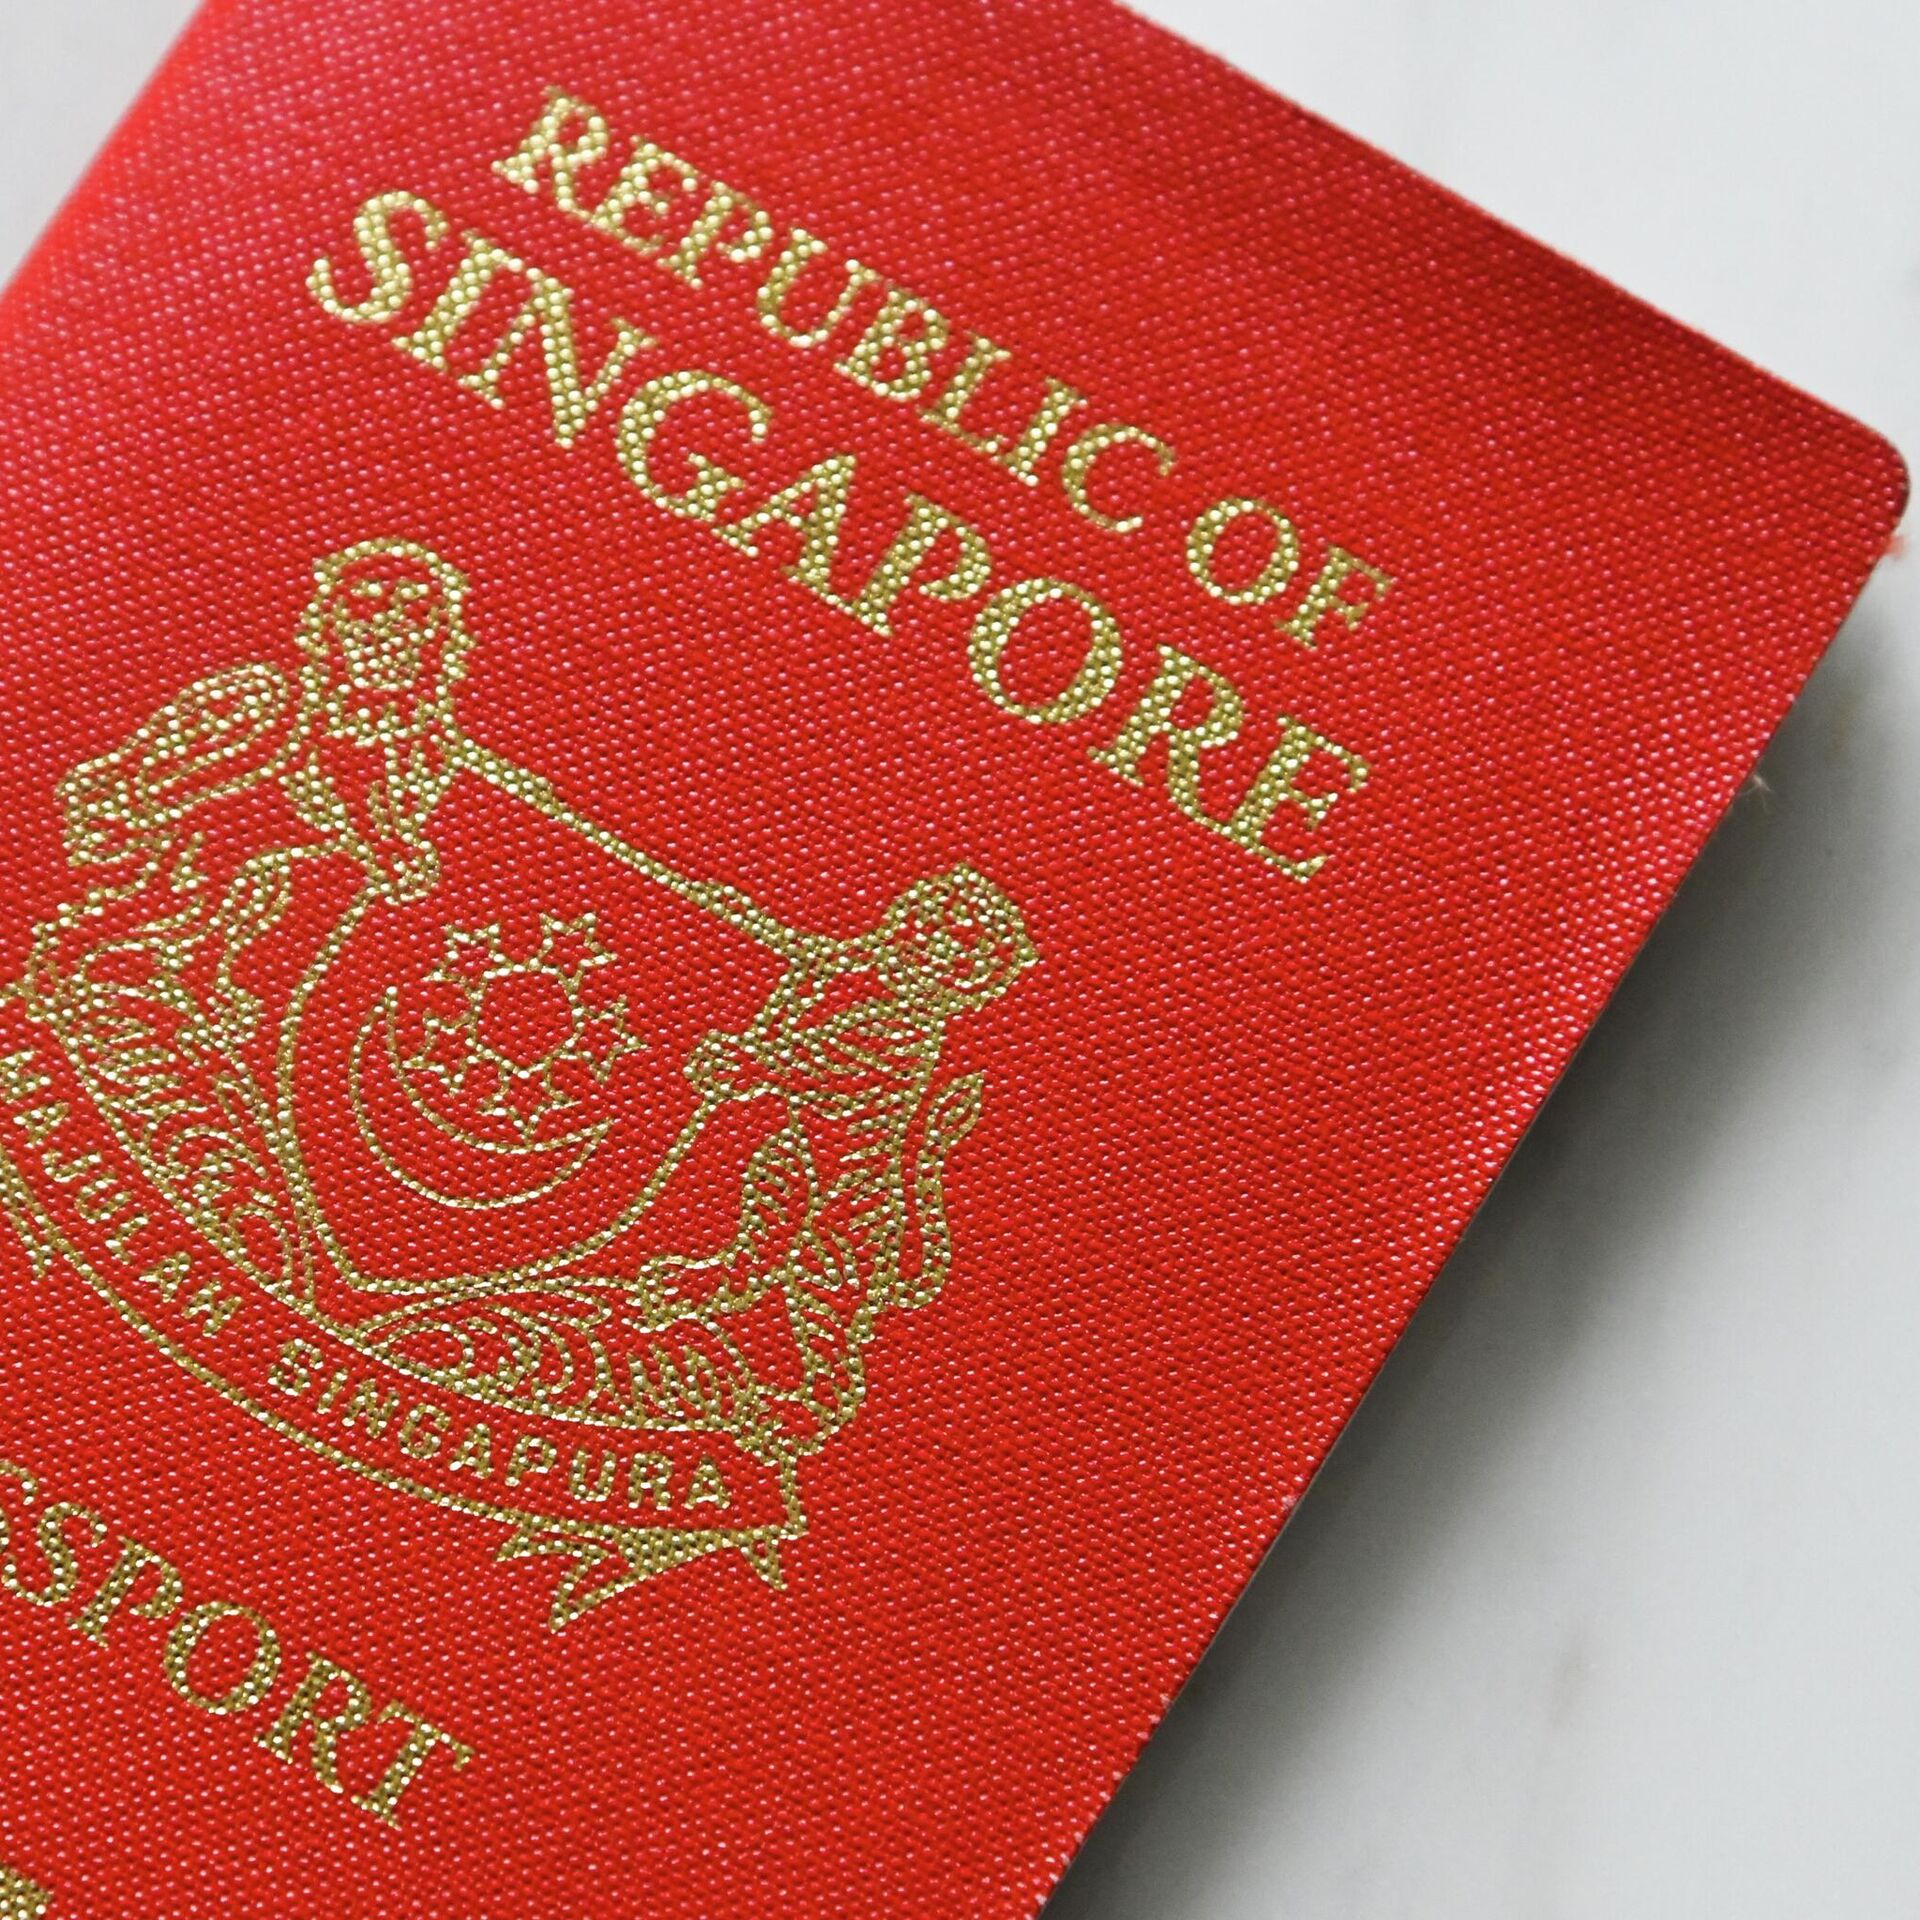 10 сильнейших паспортов. Singapore Passport.